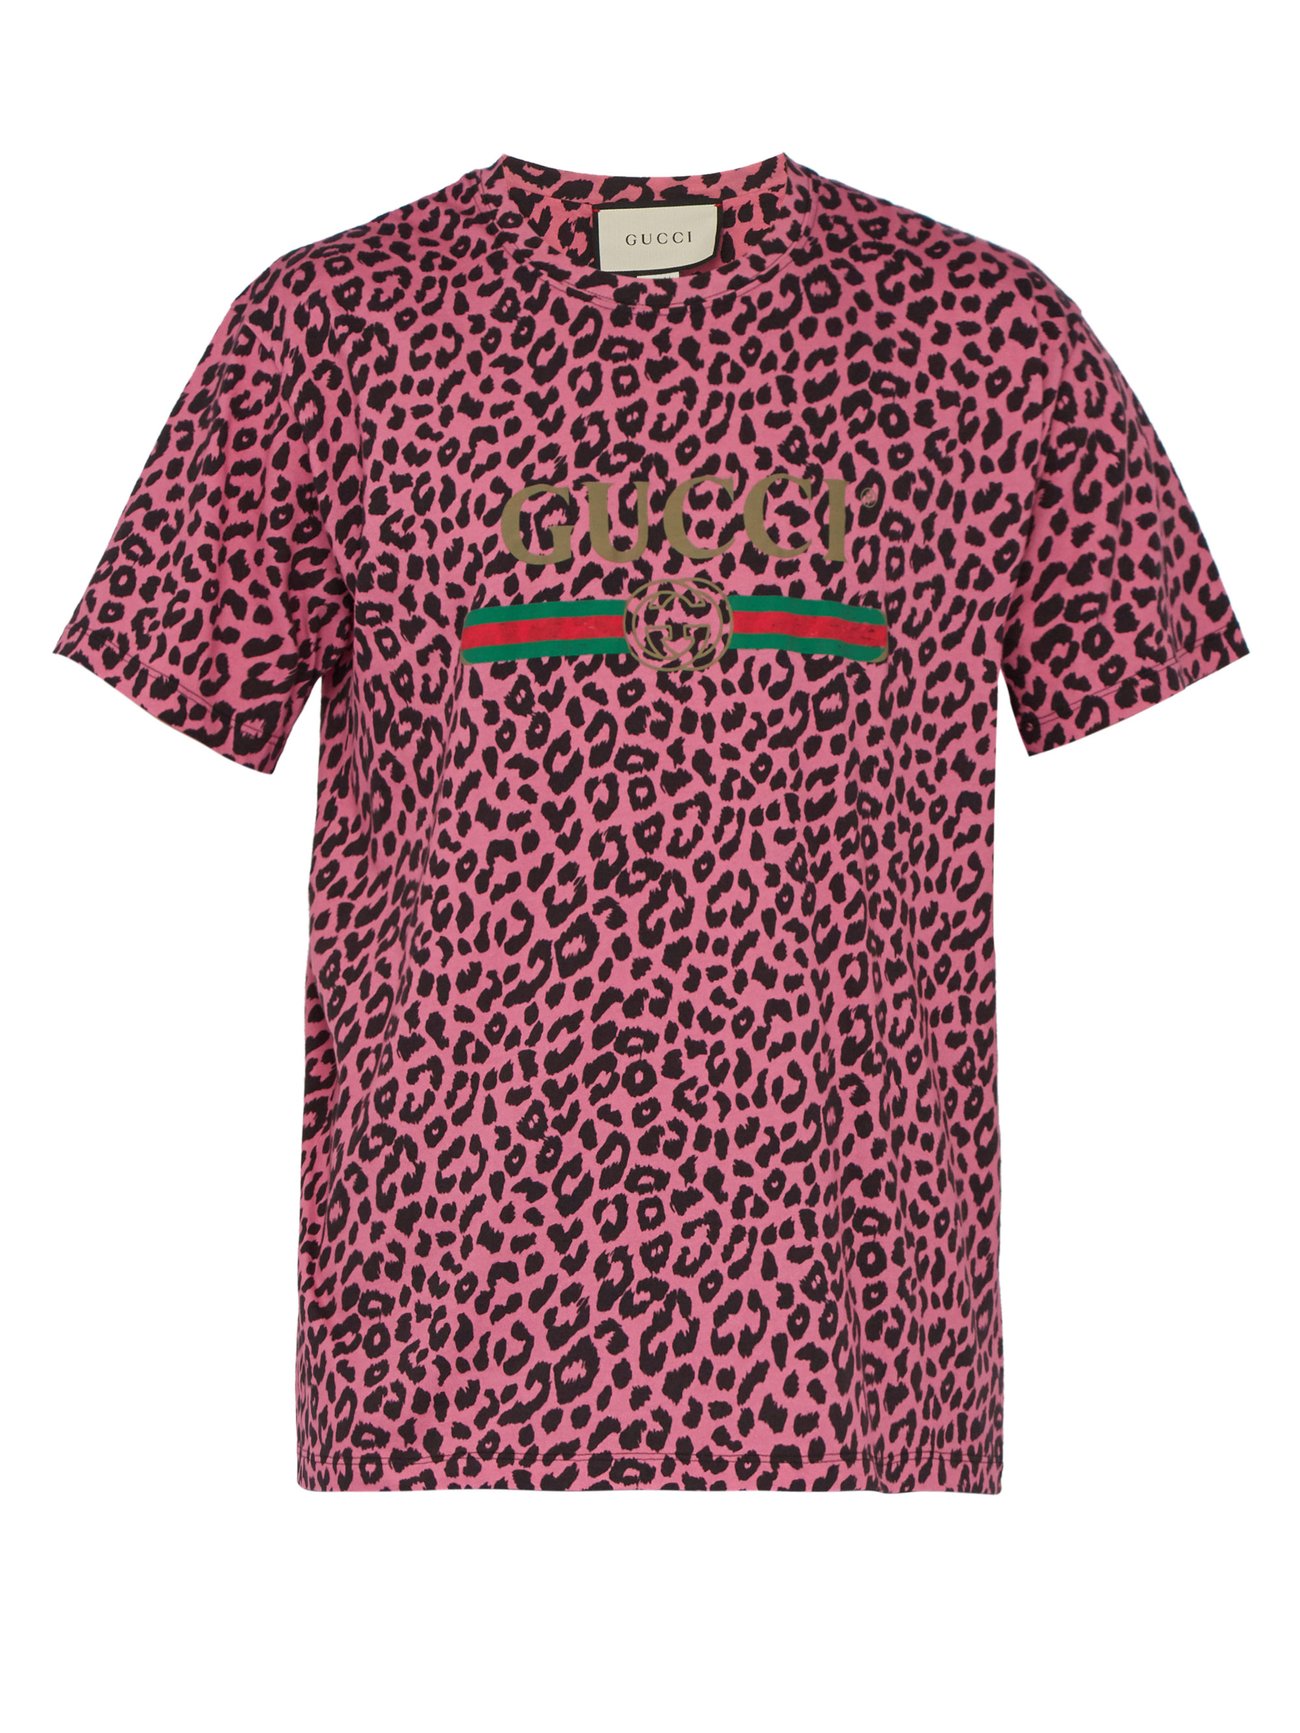 gucci leopard tshirt